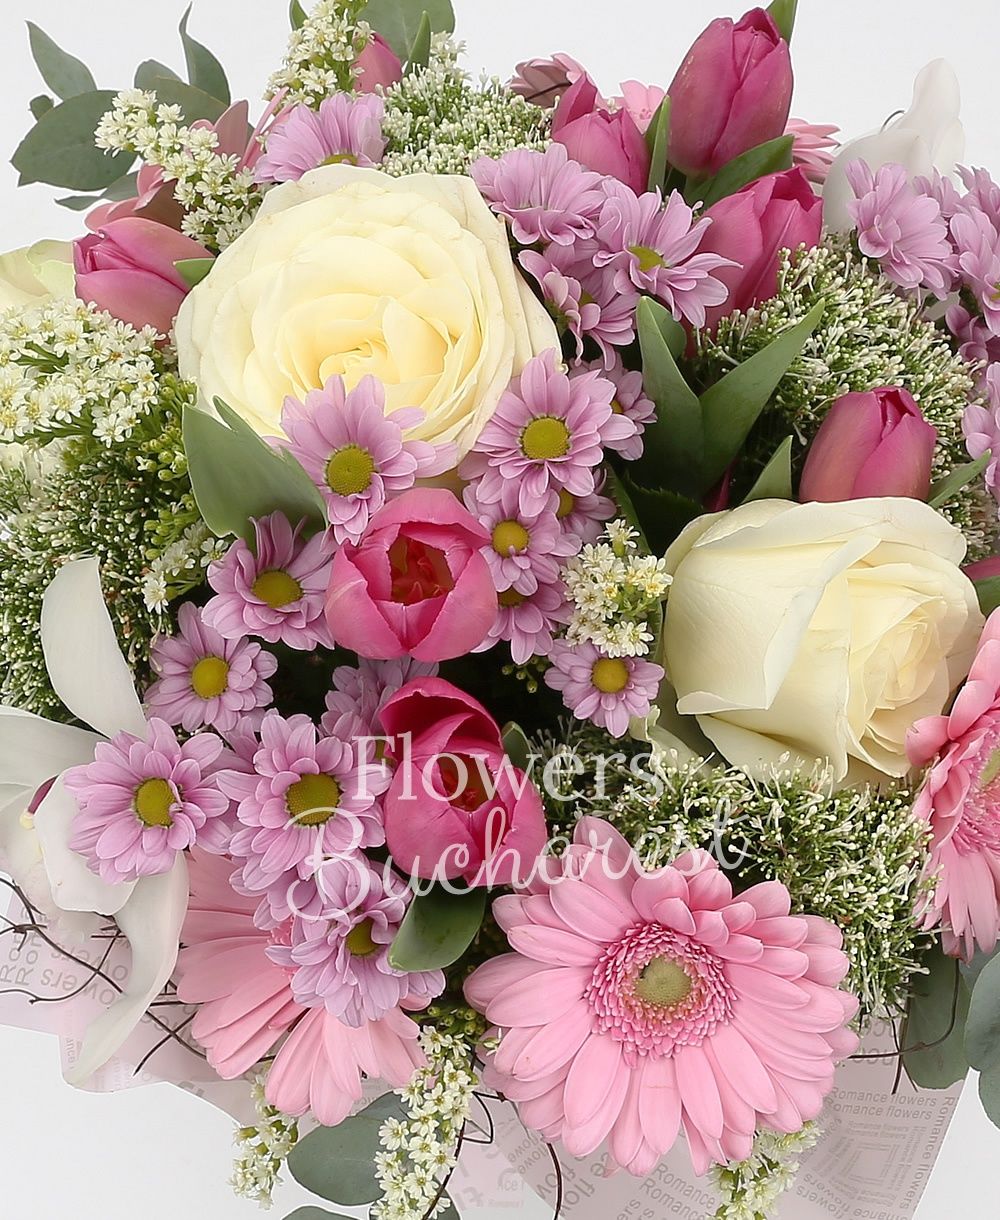 5 white roses, 10 pink tulips, 5 pink gerberas, 3 white trachelium, 5 pink daisy santini, white cymbidium, 2 solidago, greenery